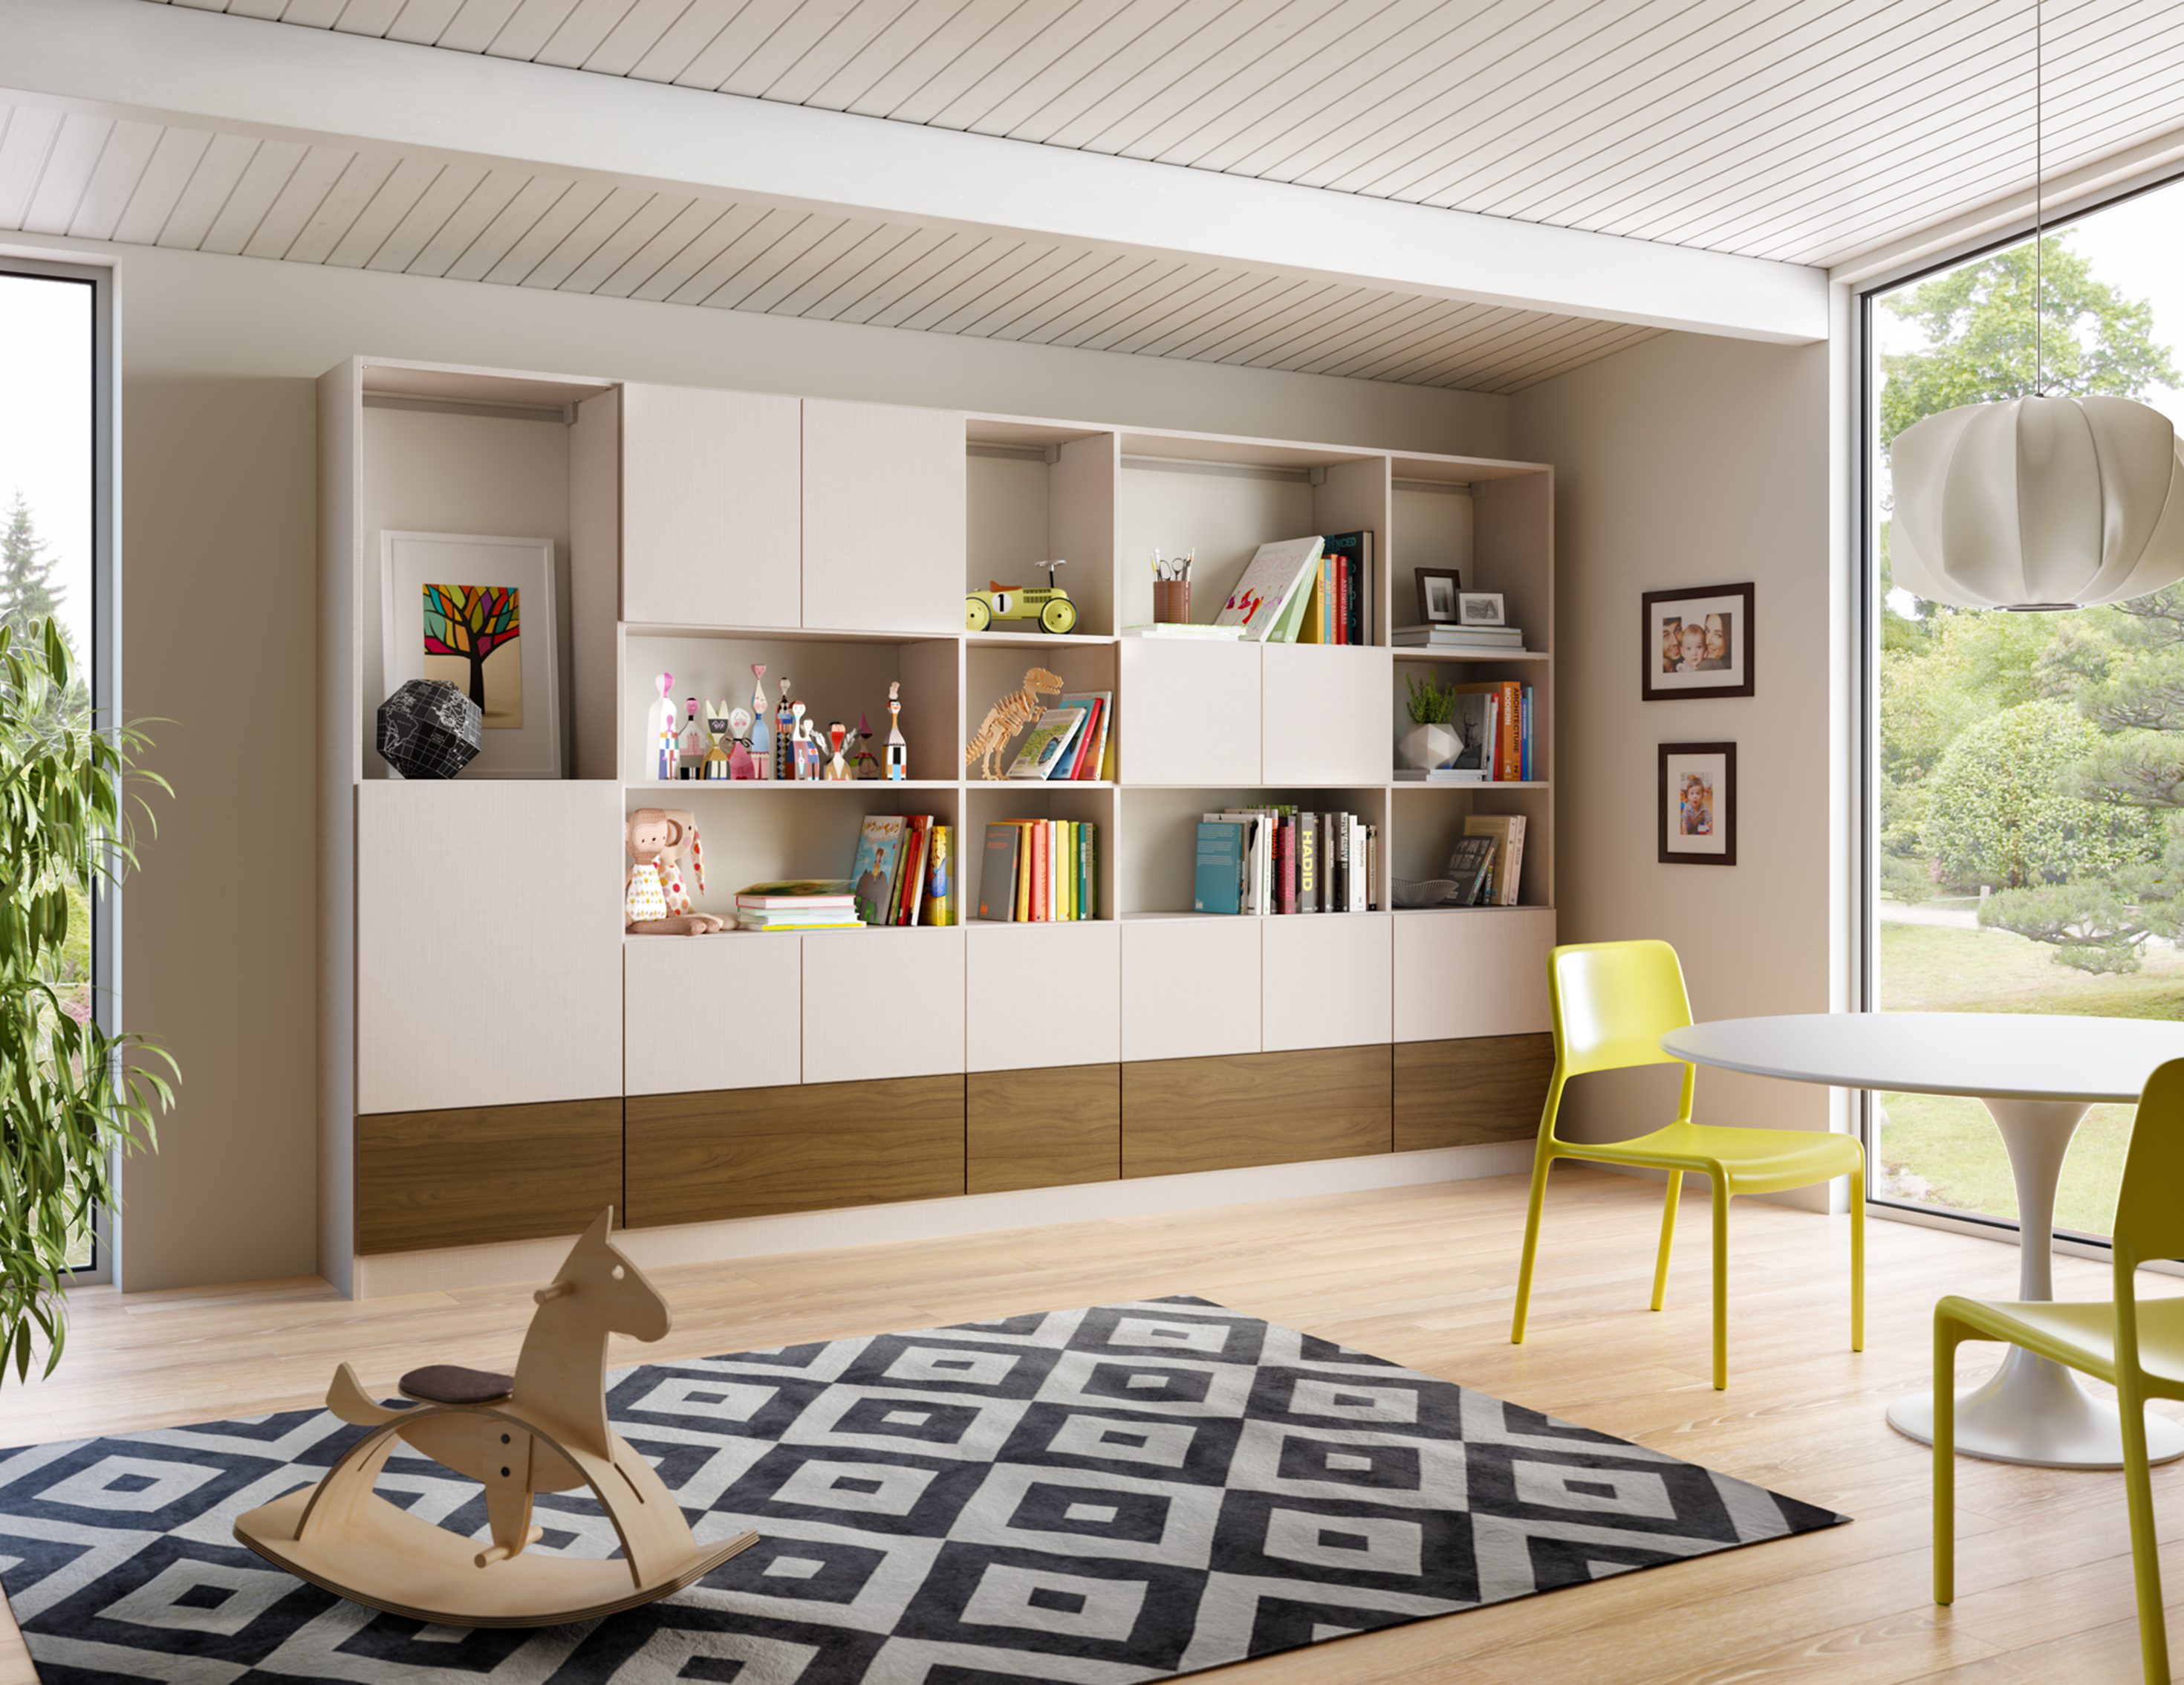 Versatile Furniture For Multi purpose Rooms